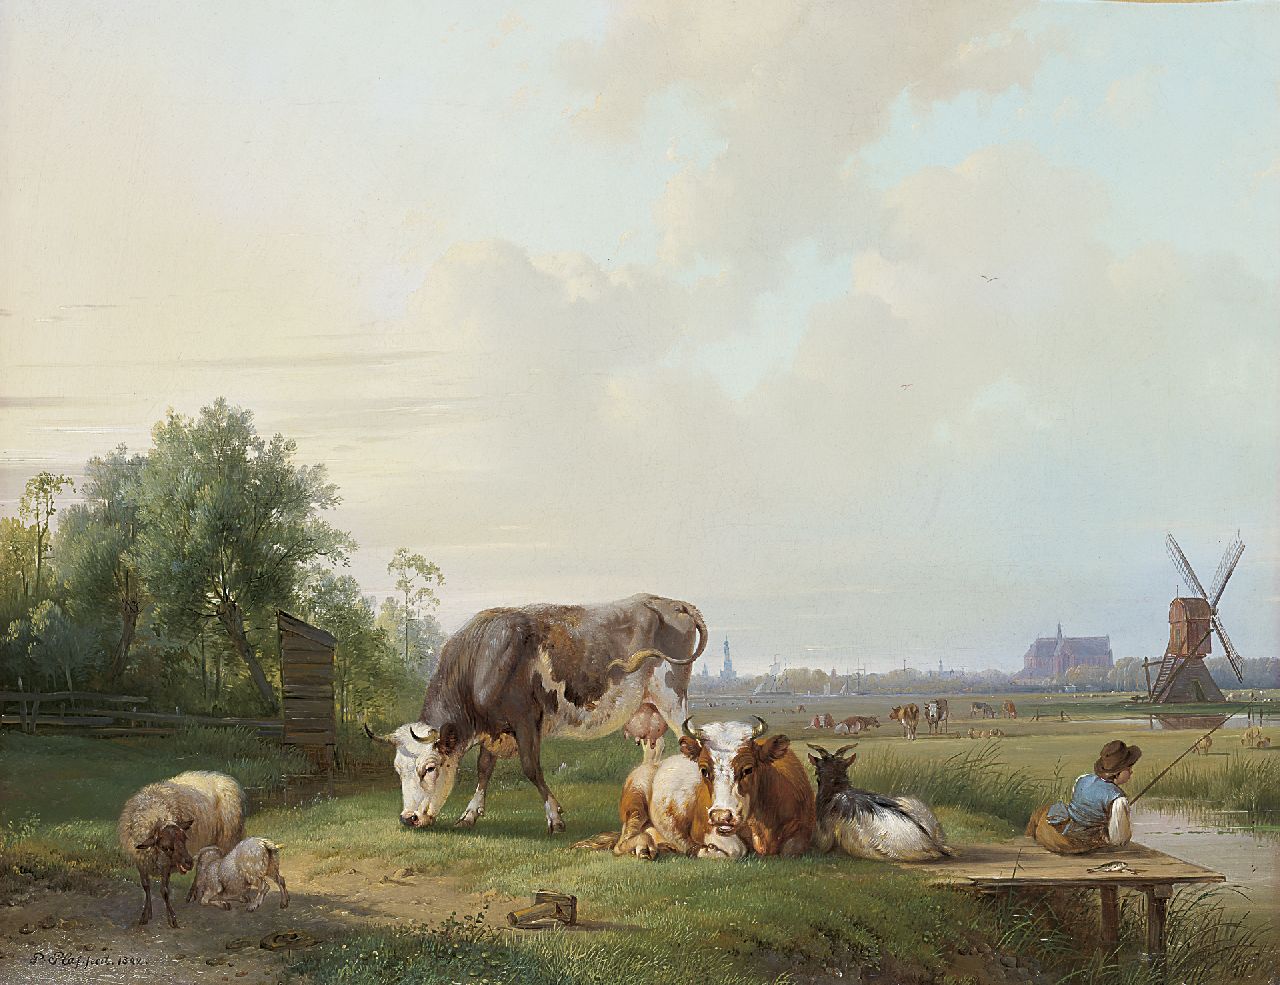 Pieter Plas | Rustend vee en hengelaar in een pastoraal landschap, Alkmaar in het verschiet, olieverf op doek, 44,4 x 55,2 cm, gesigneerd l.o. en gedateerd 1842